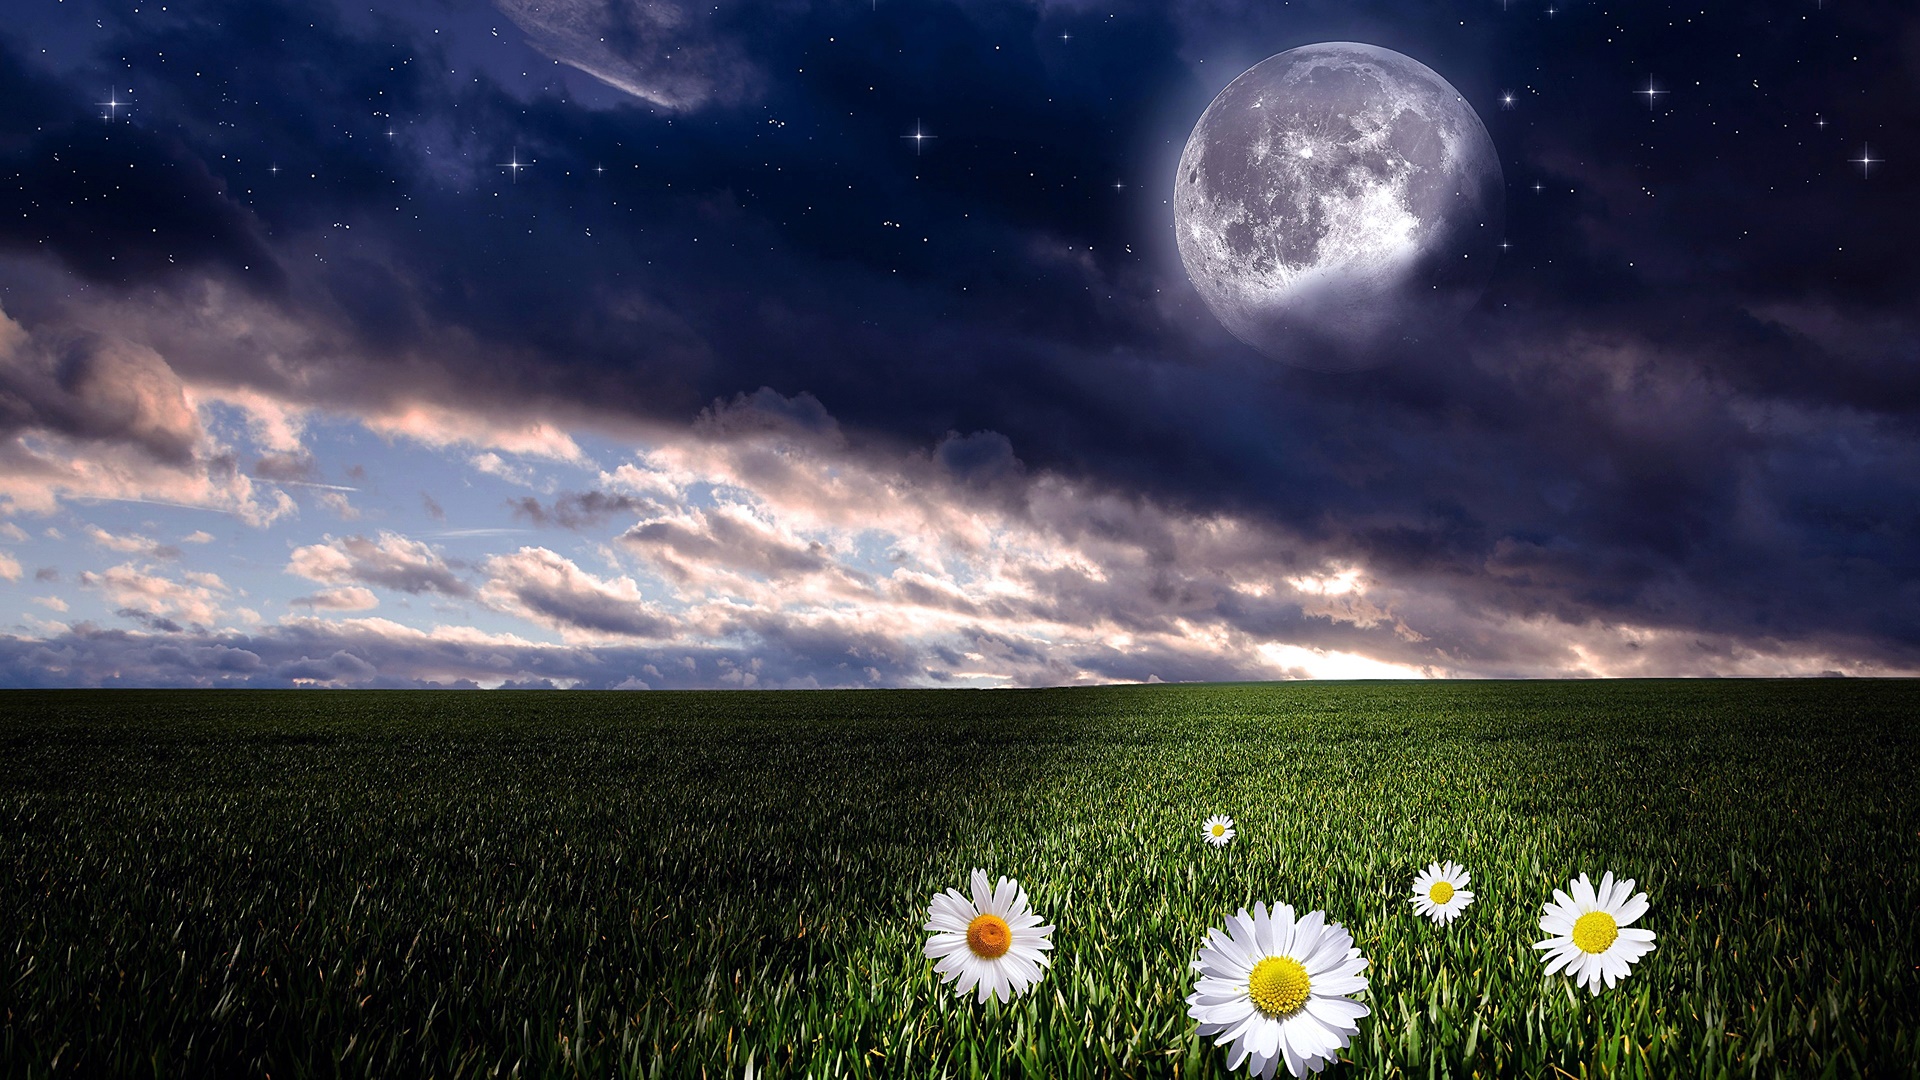 full moon, earth, moon, cloud, daisy, field, landscape